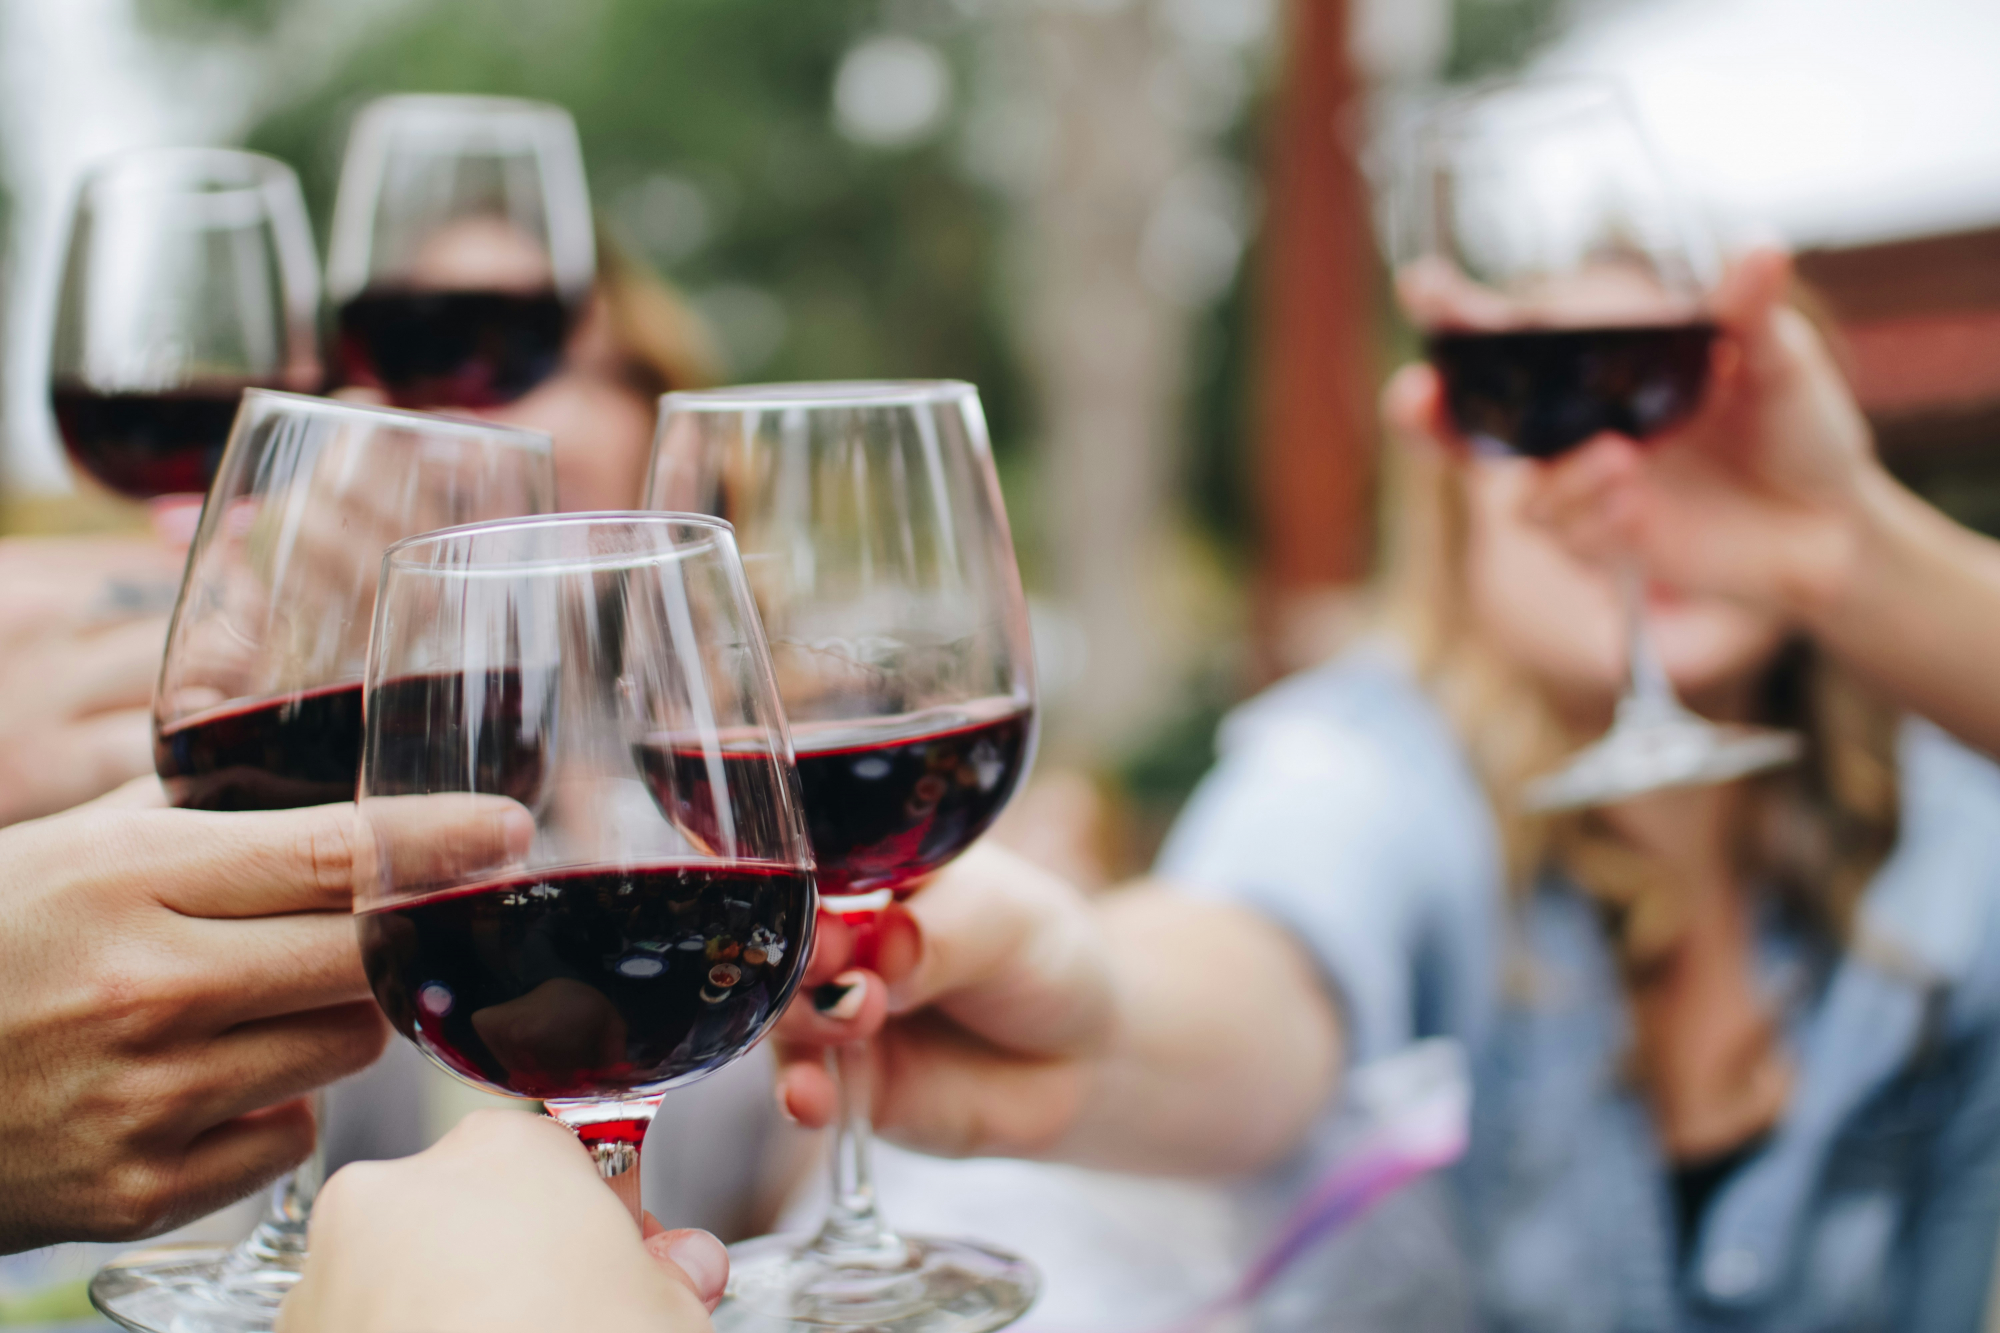 découvrez les meilleures associations de vin avec notre guide de wine pairing. trouvez la combinaison parfaite pour sublimer vos plats et profitez d'une expérience gustative inoubliable.